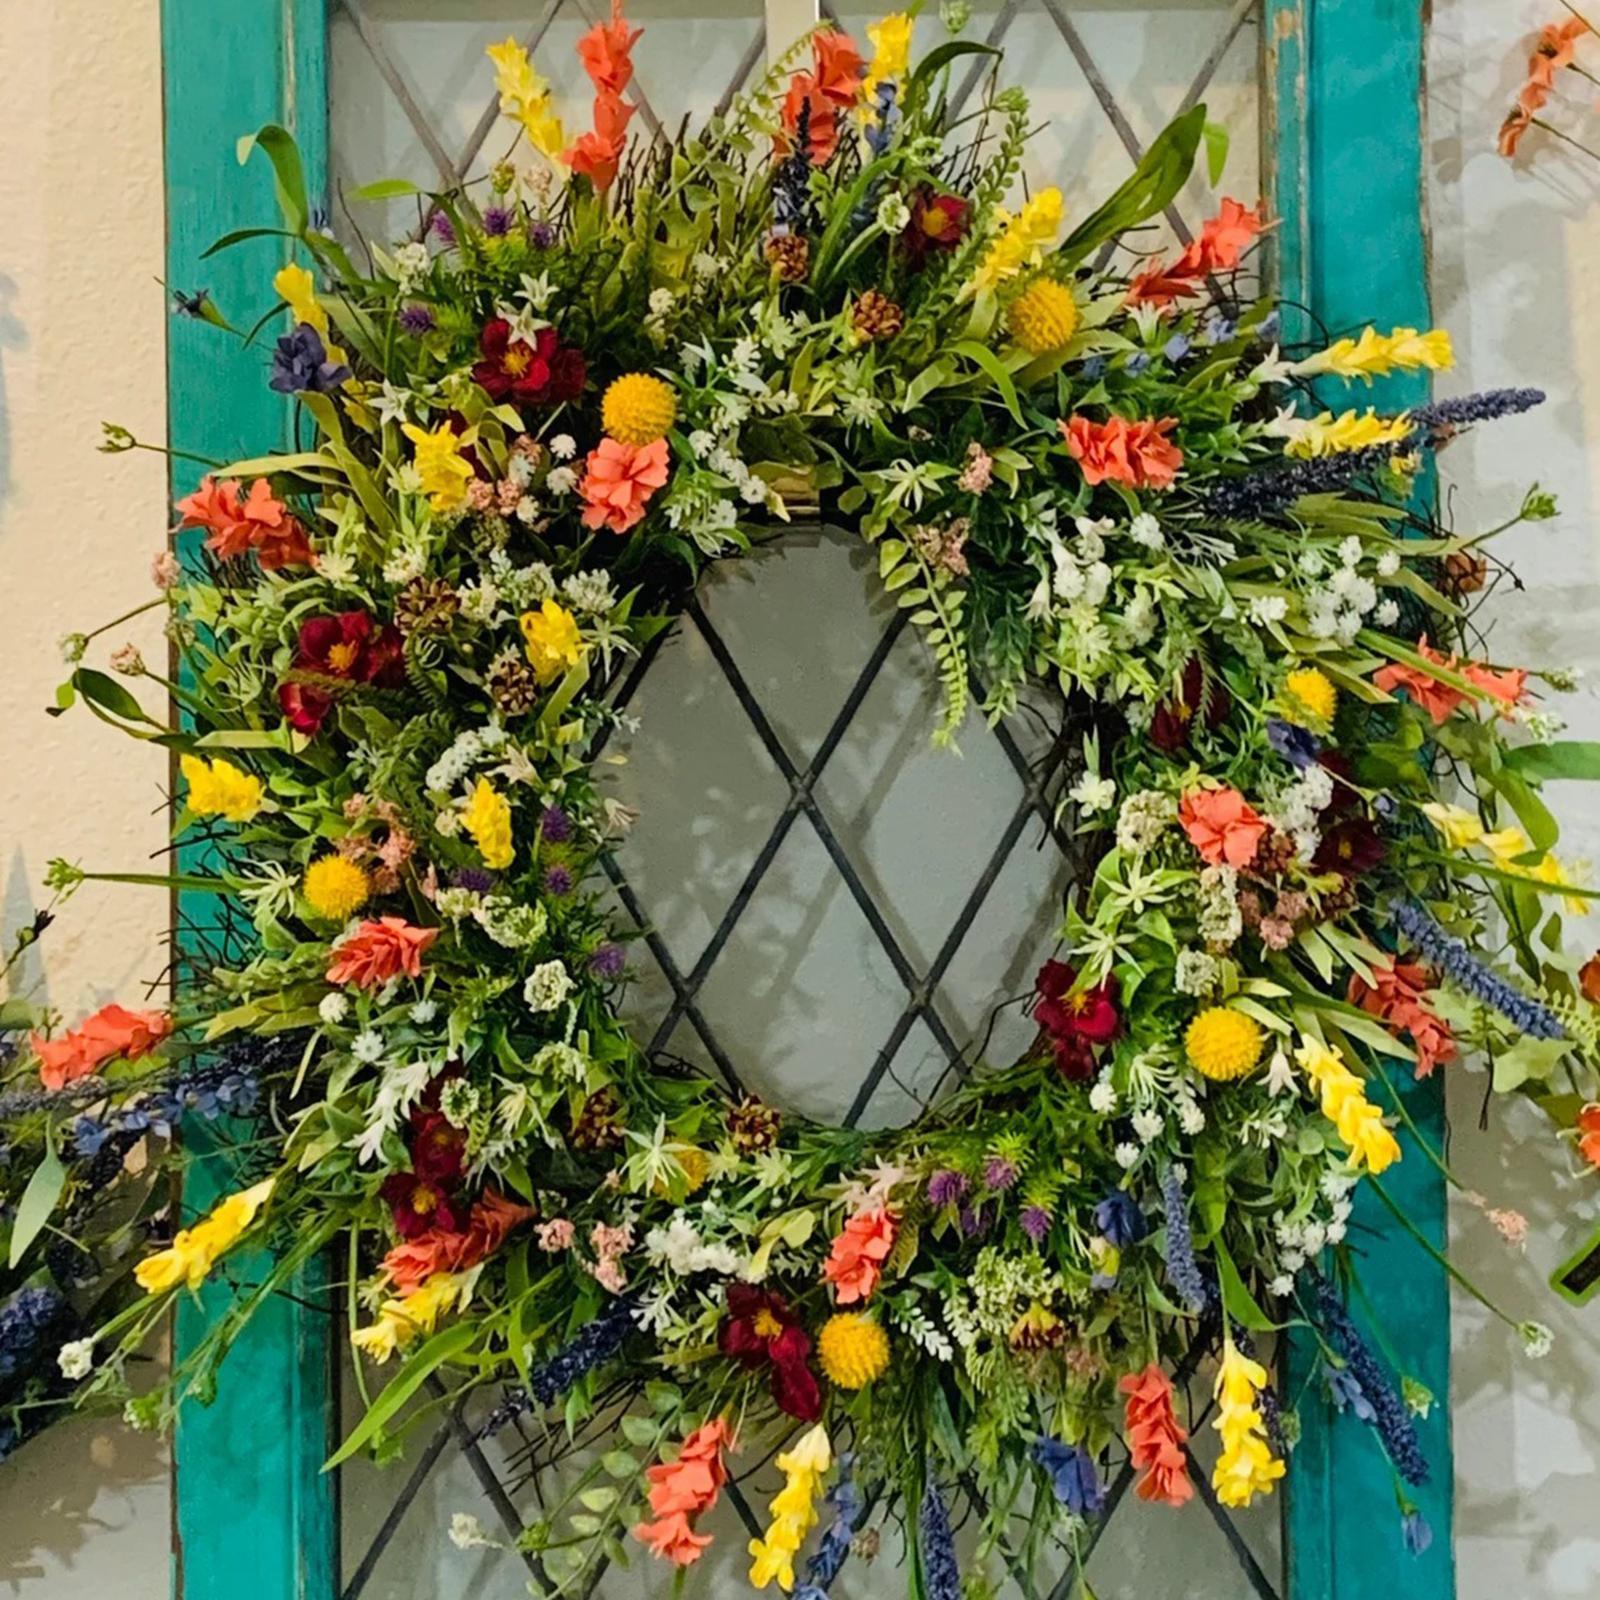 Floral Wreath Home Decor Artificial Flower Wreath for Party Garden Farmhouse Front Door